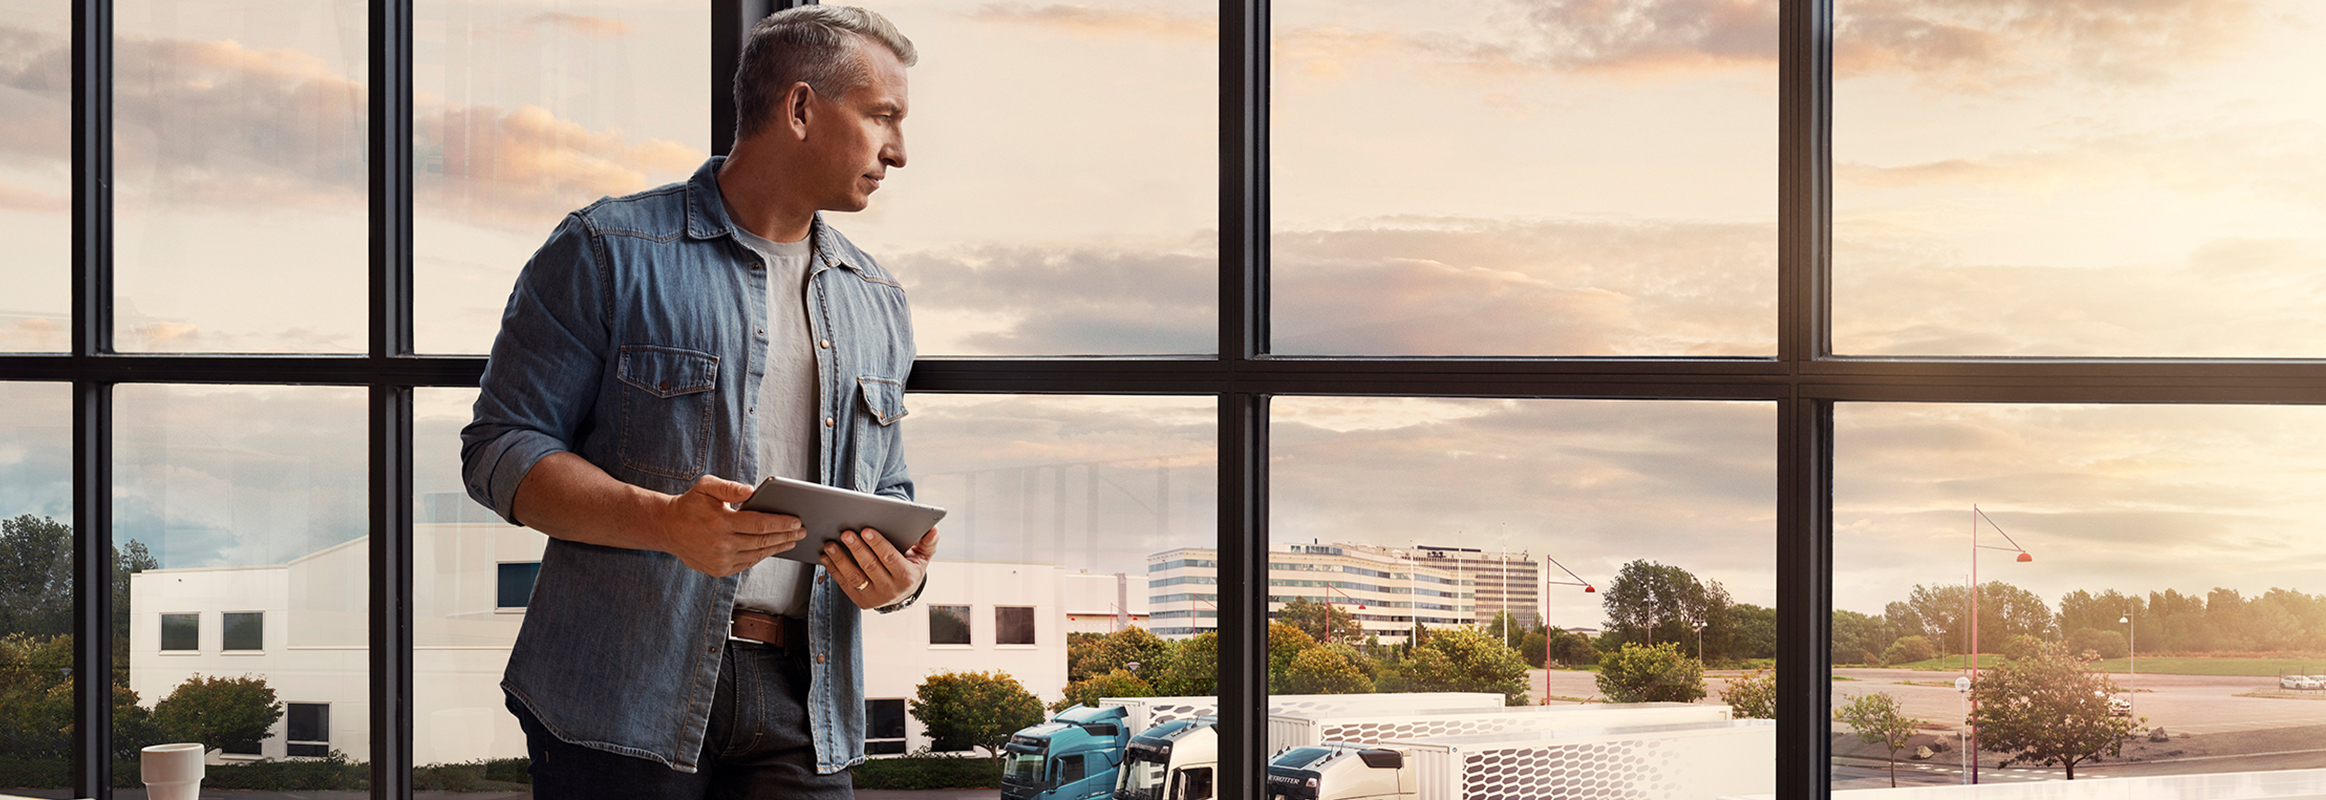 Un uomo con in mano un tablet si trova vicino a una finestra e guarda la sua flotta di camion